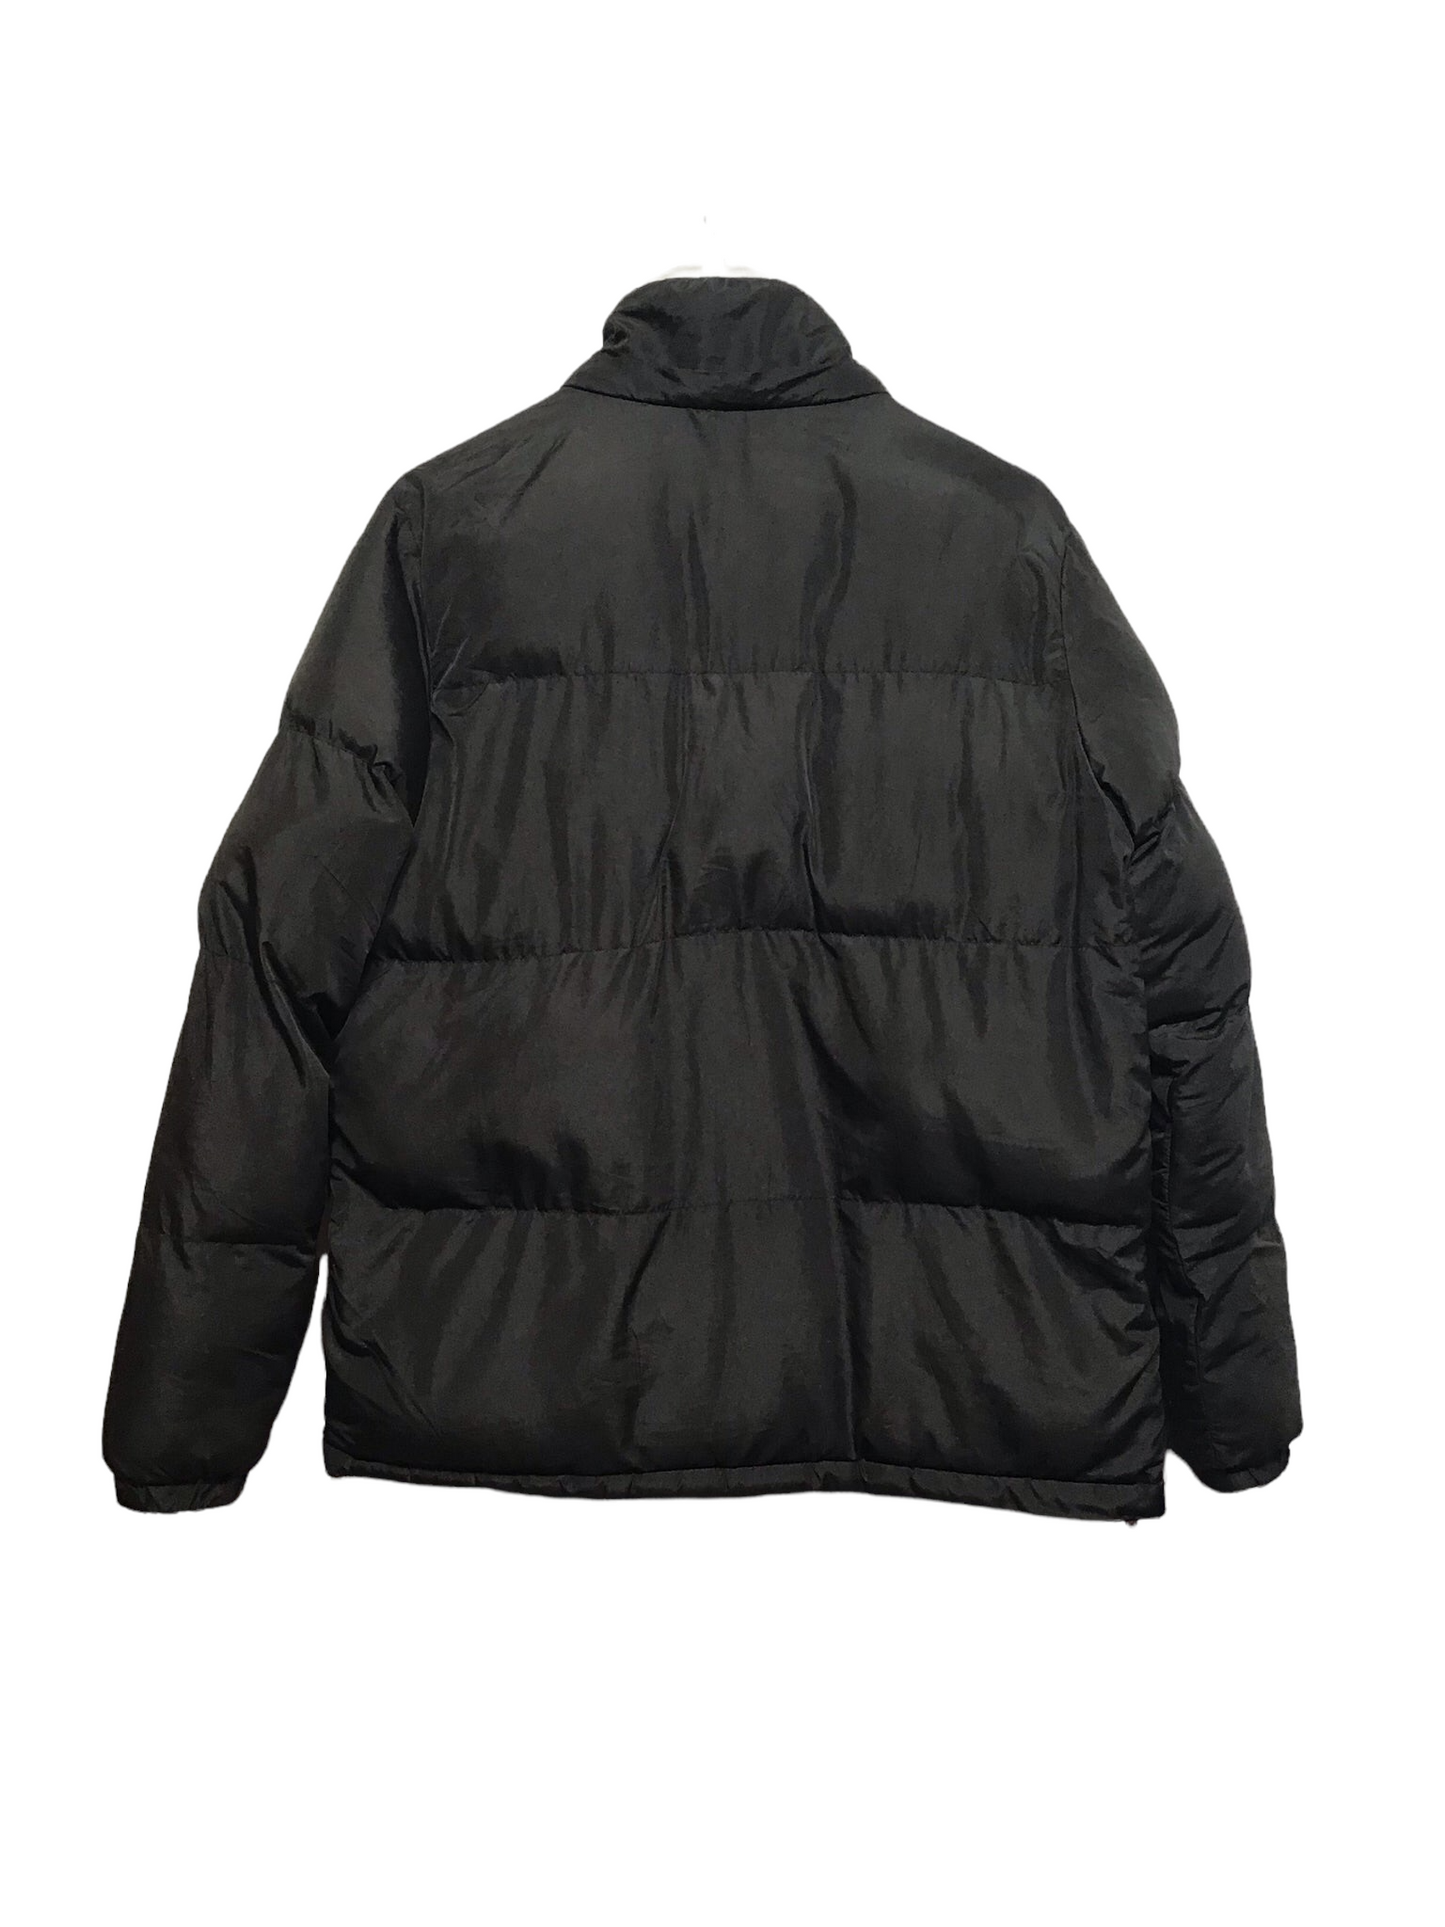 Ralph Lauren Puffer Jacket (Size M)